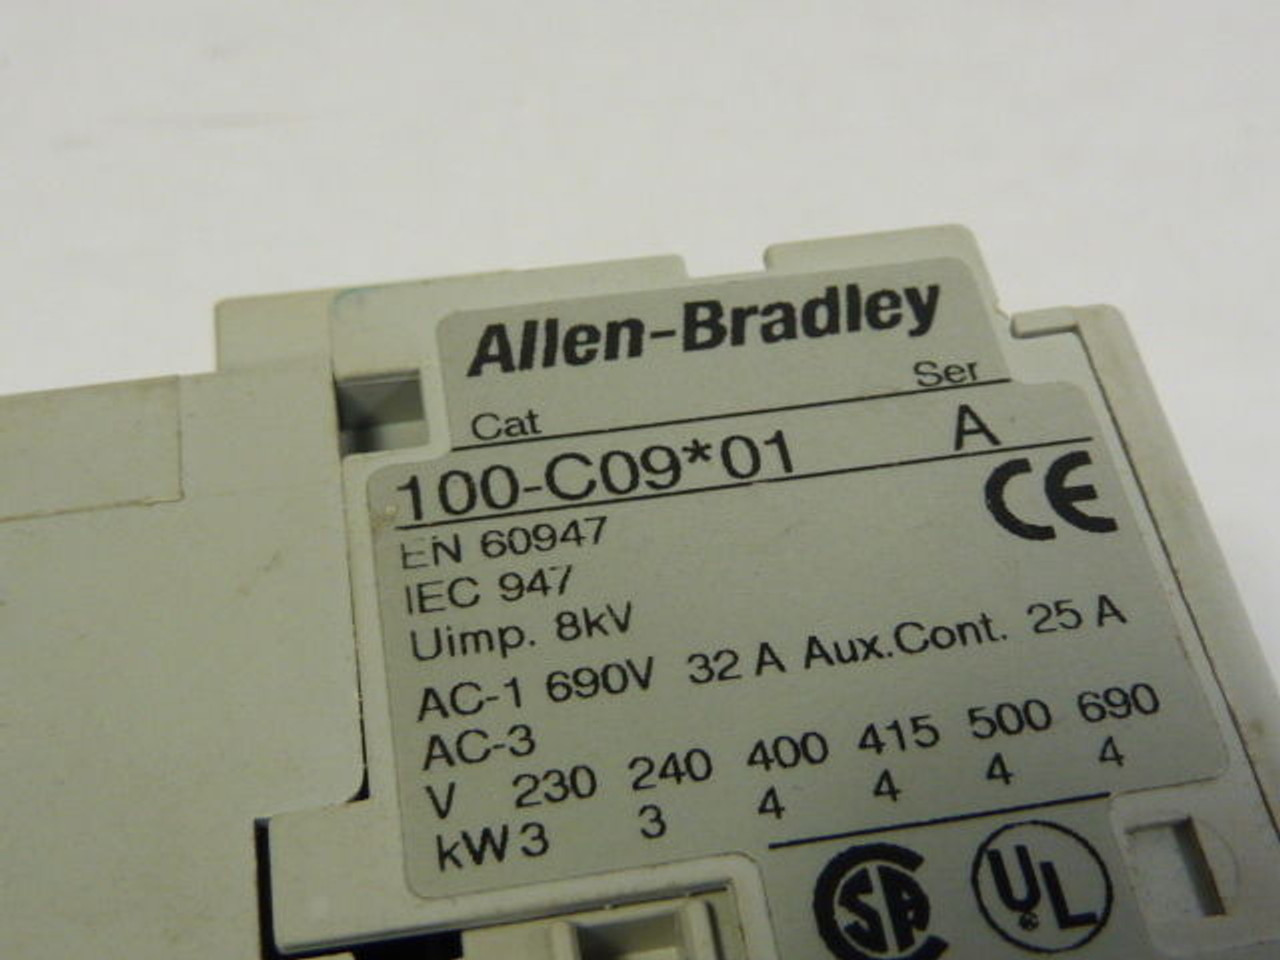 Allen-Bradley 100-C09D01 Contactor USED